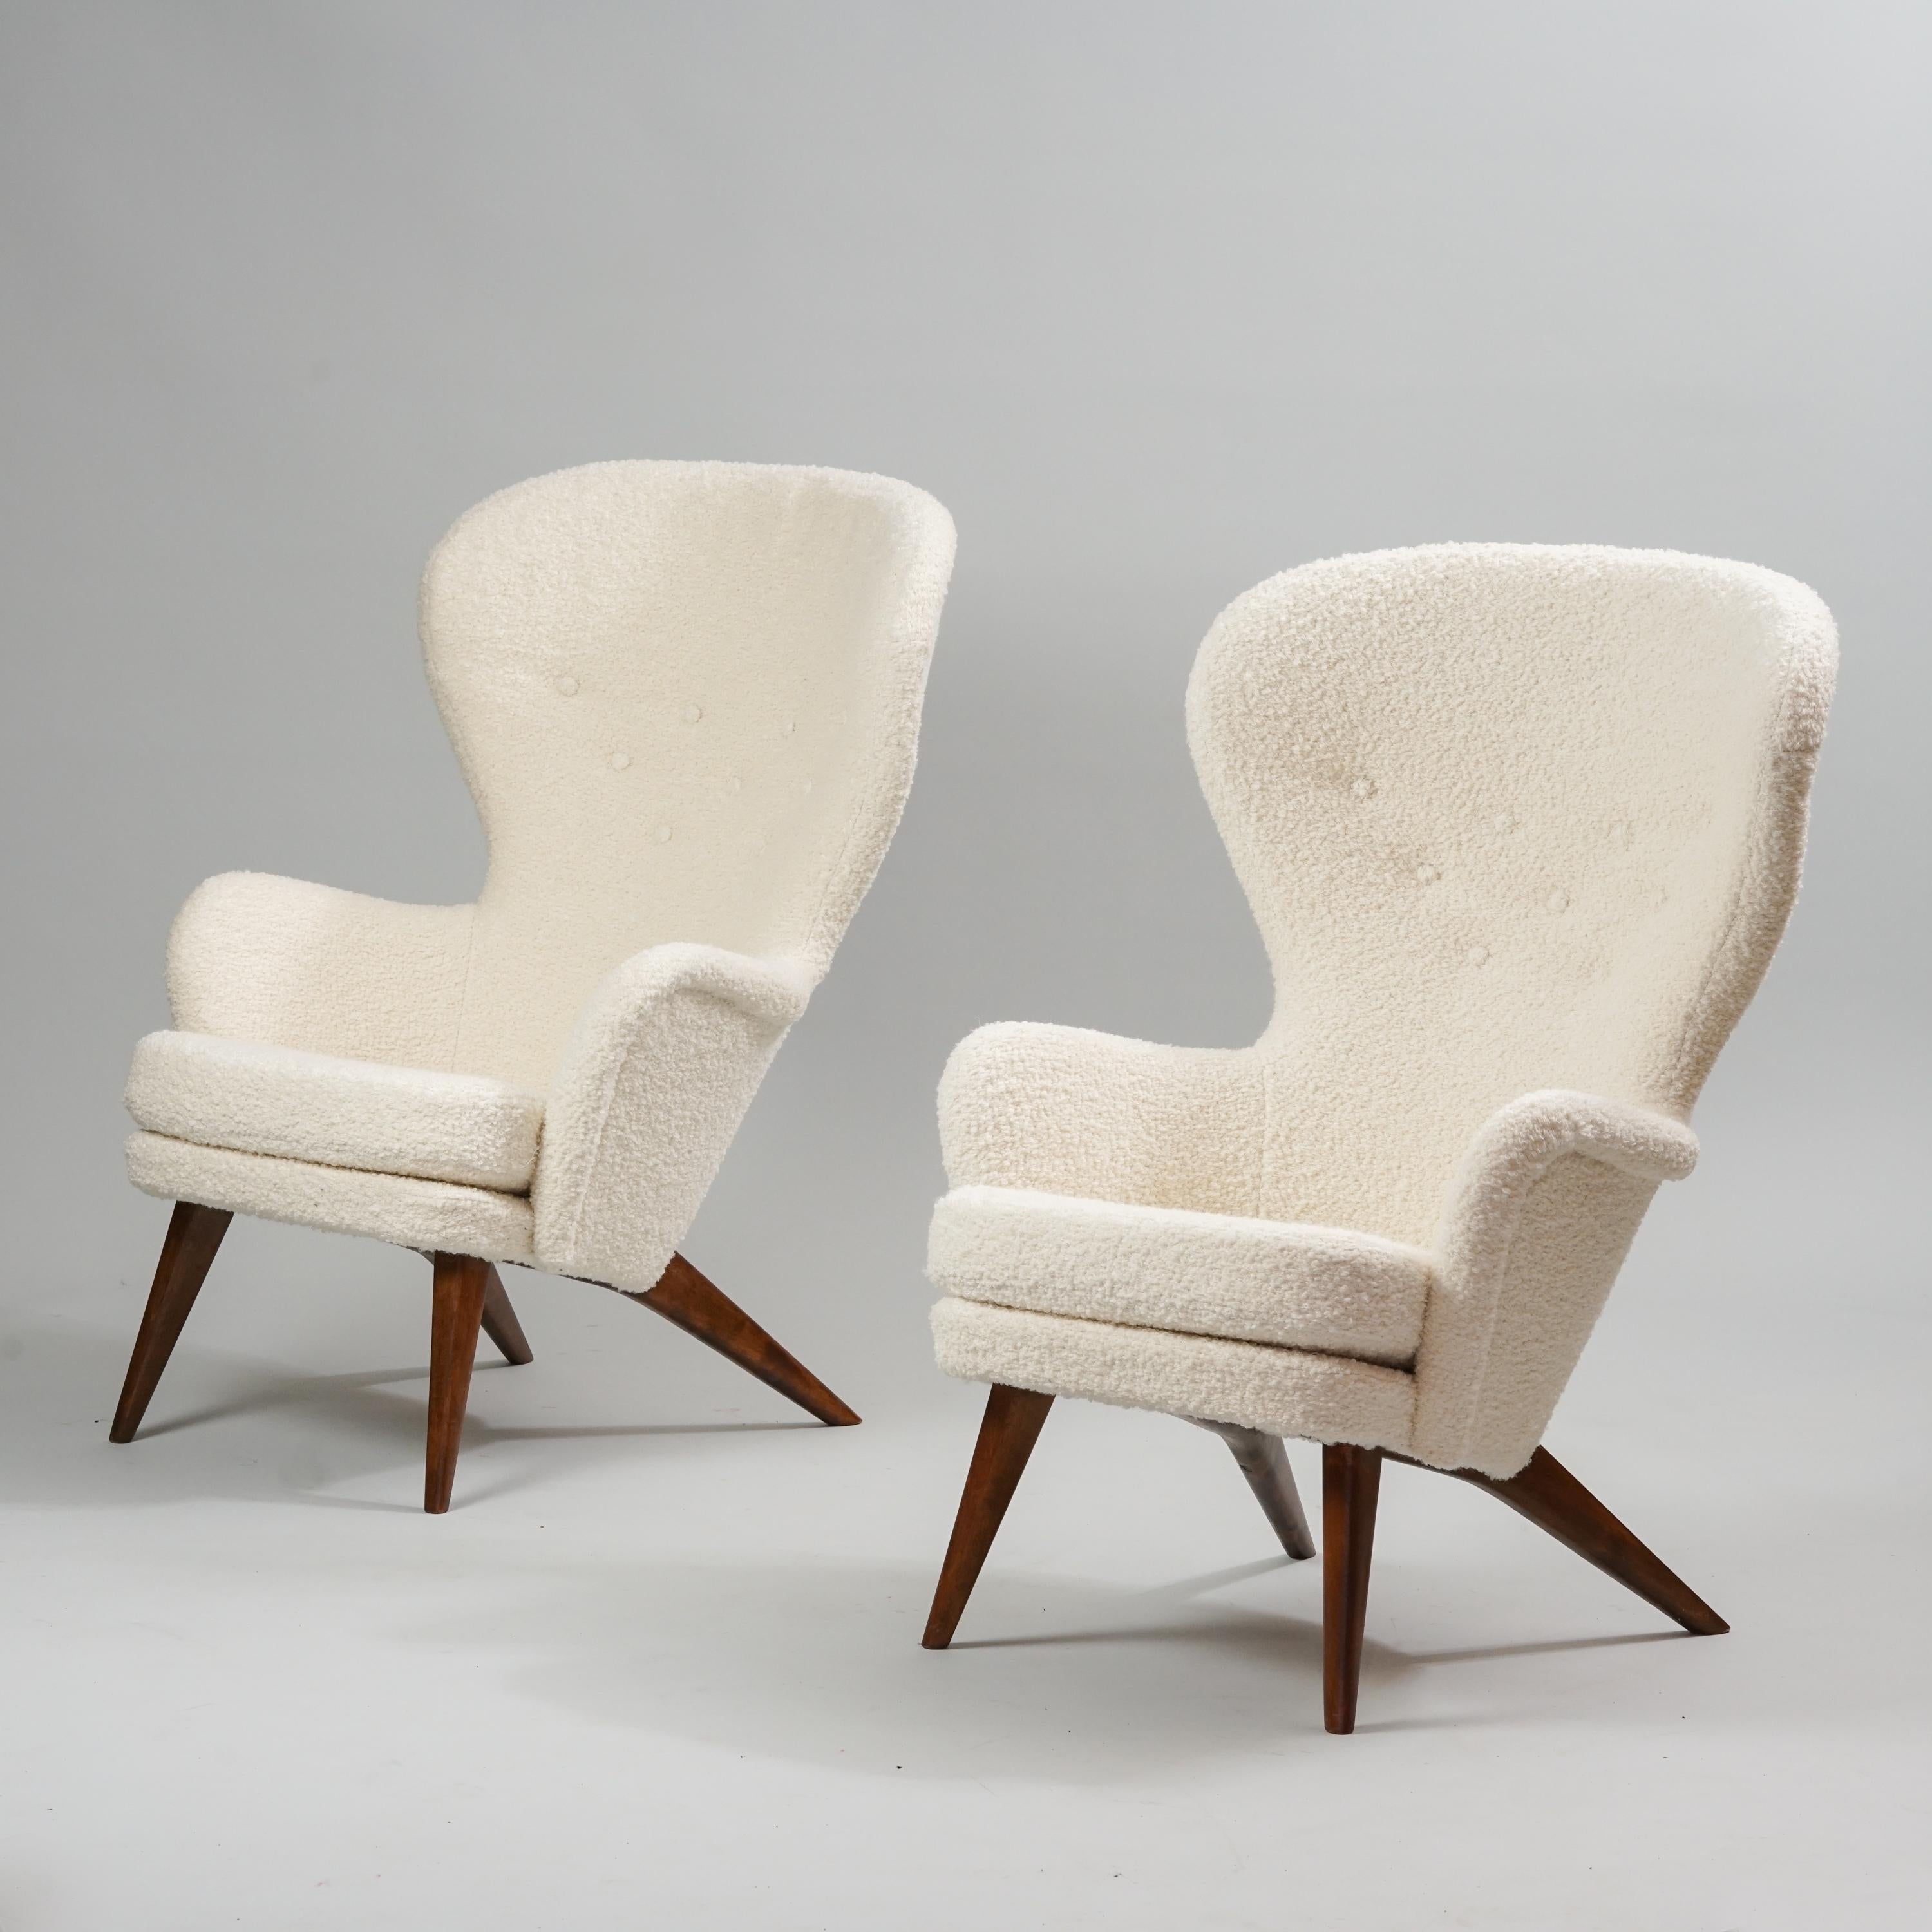 Satz von zwei Sesseln des Modells Siesta, entworfen von Carl Gustaf Hiort af Ornäs, hergestellt von Hiort Tuote, 1950er Jahre. Markiert. Beine aus gebeizter Birke. Neu gepolstert mit dem hochwertigen Lauritzon-Stoff 